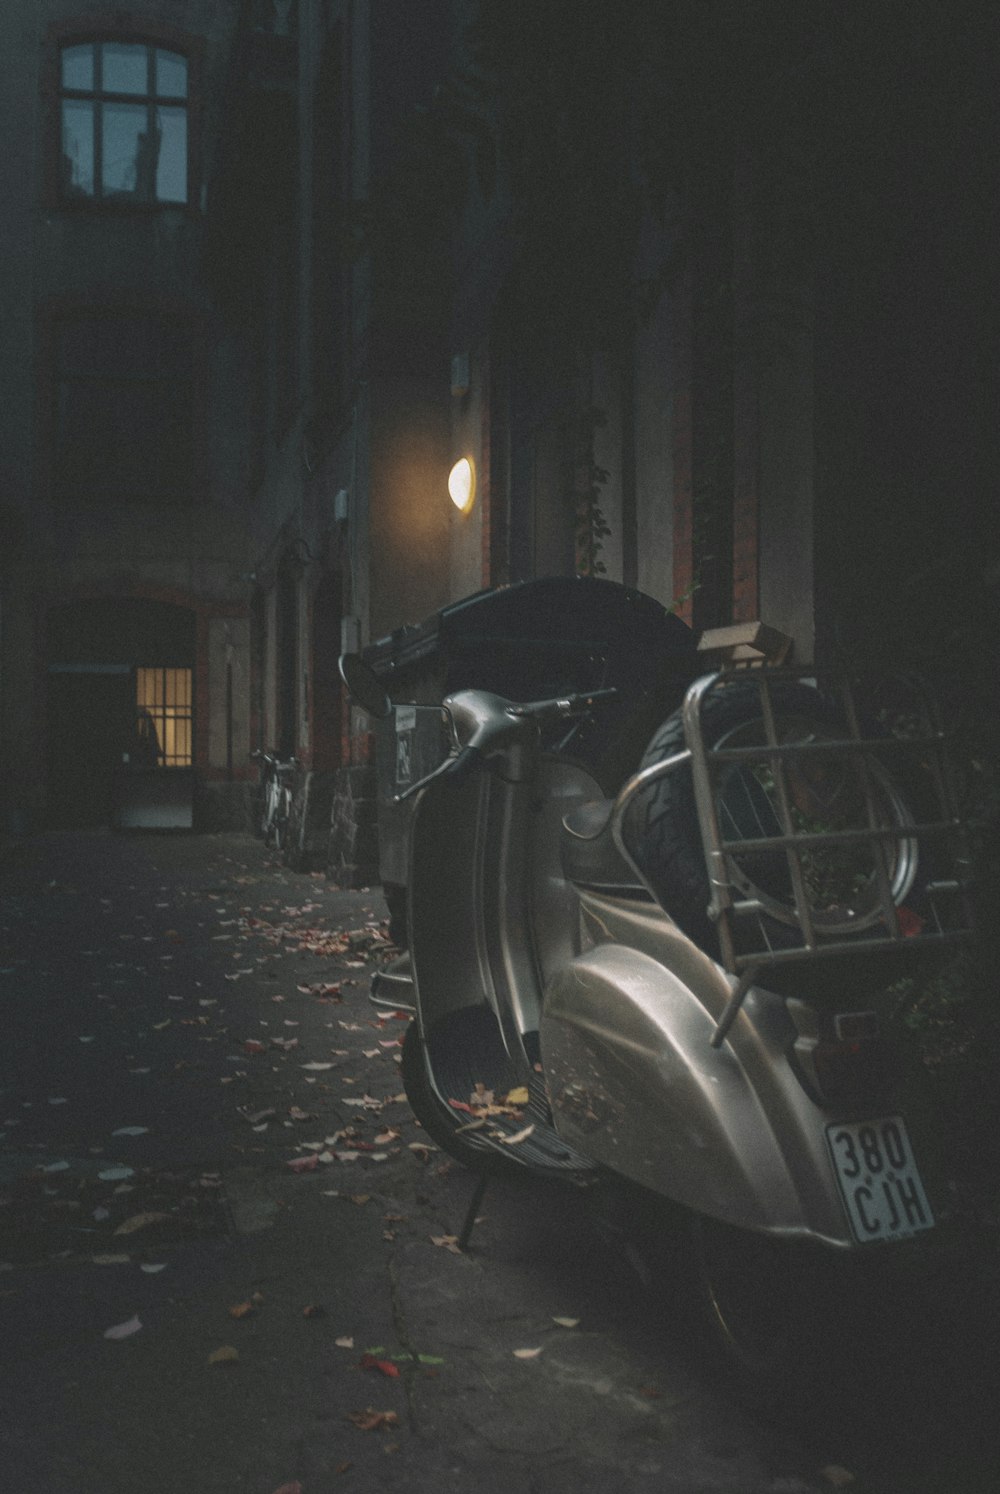 Moto noire garée sur le trottoir pendant la nuit